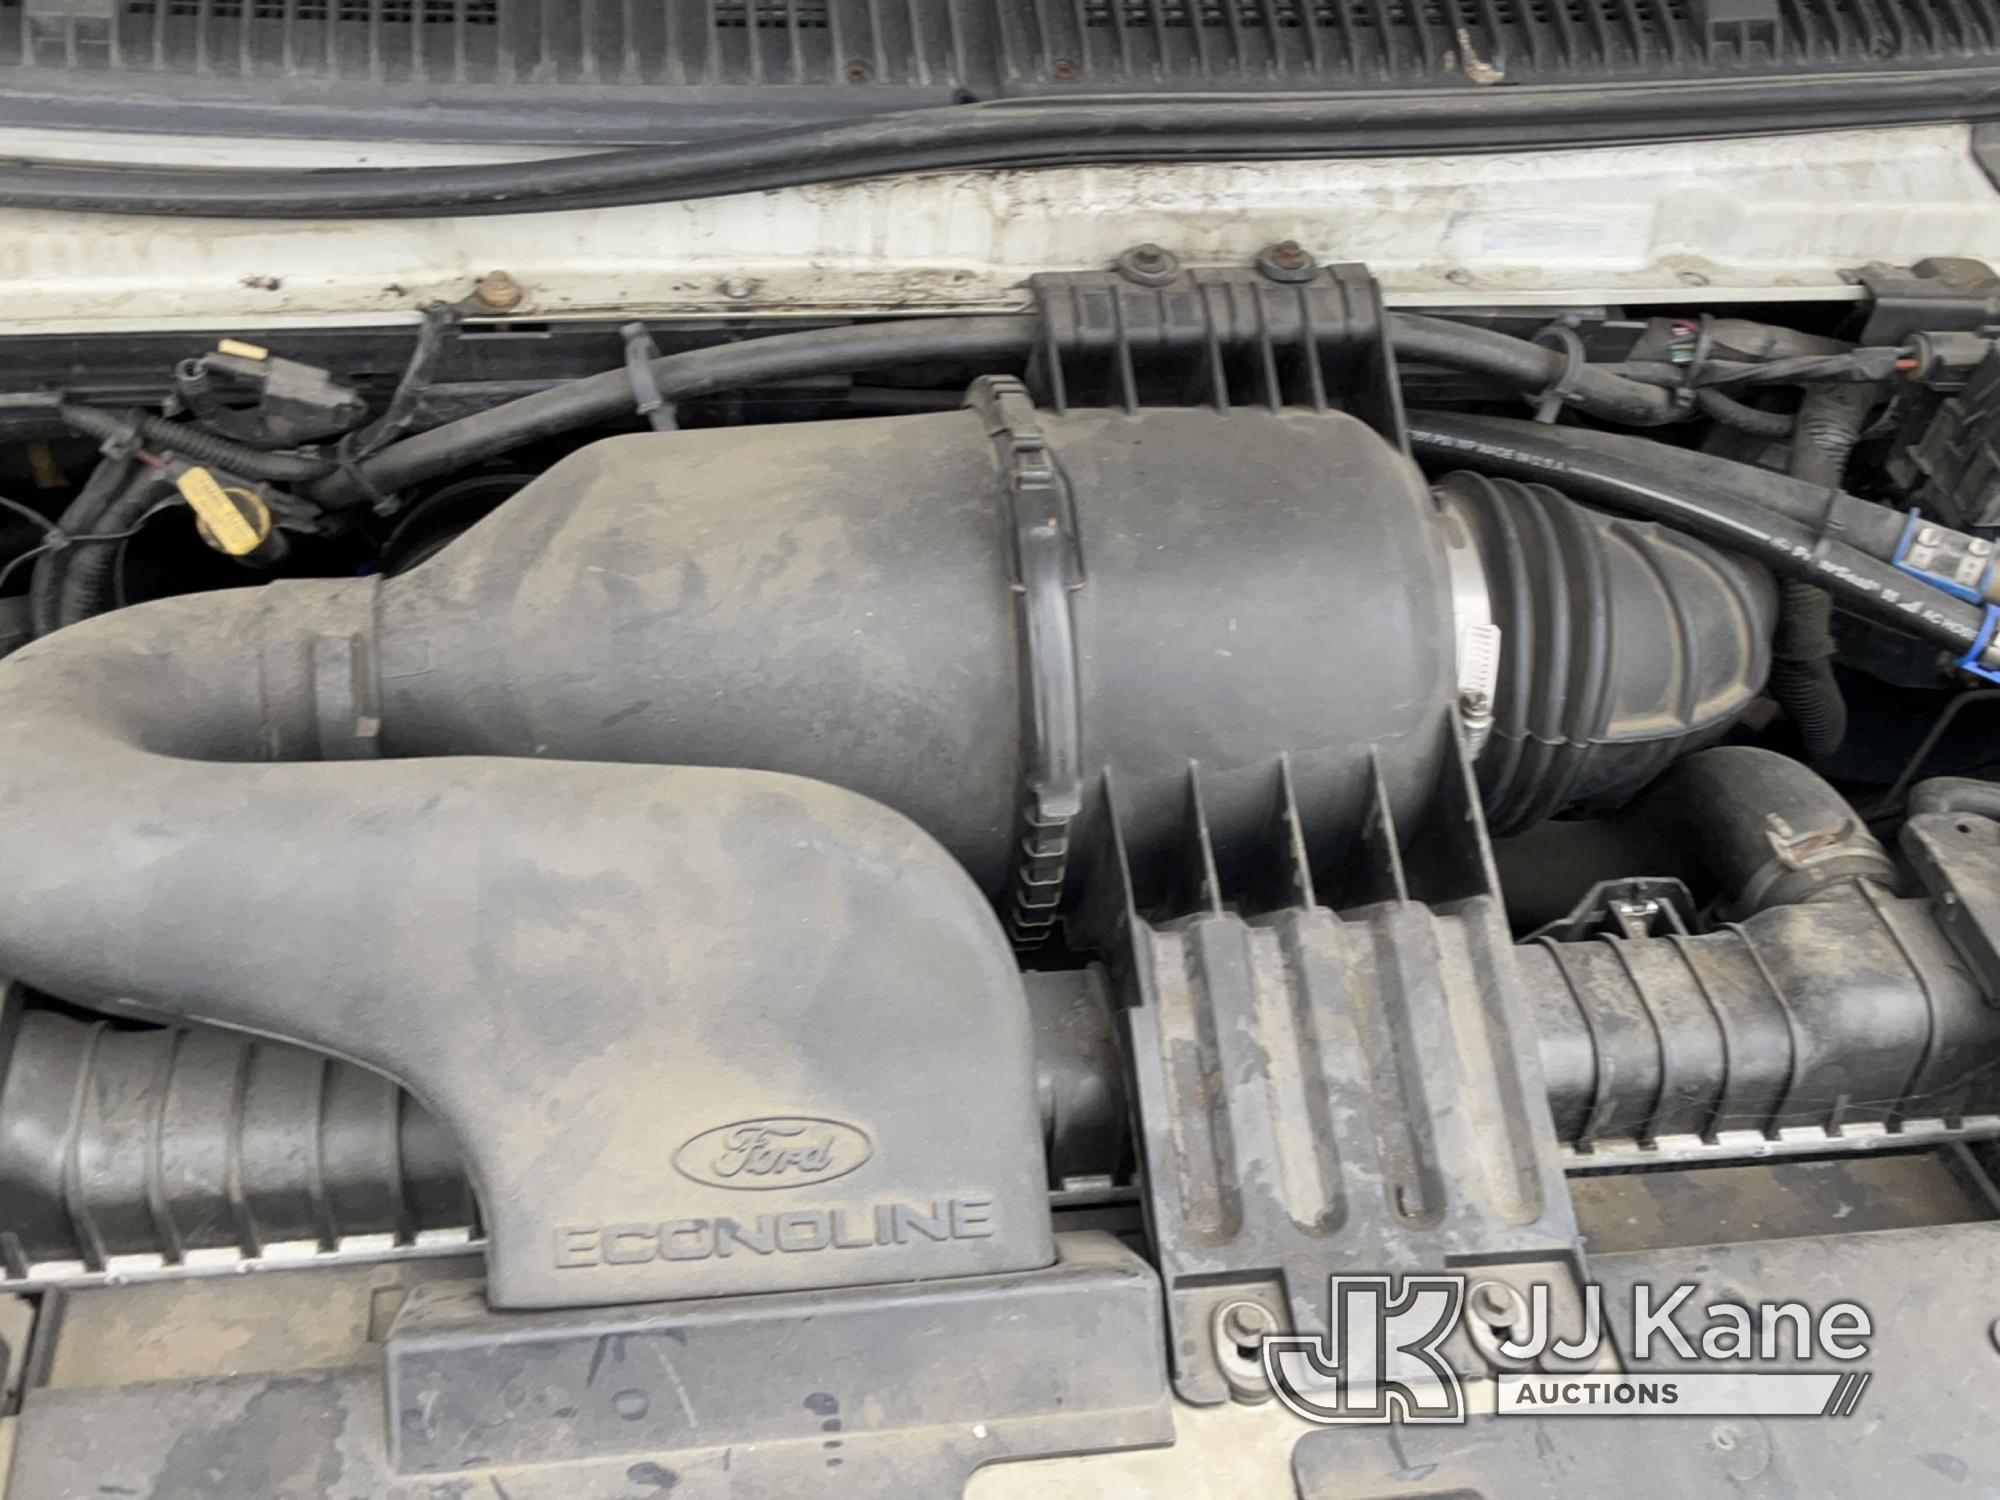 (Jurupa Valley, CA) 2006 Ford E350 Cutaway Runs & Moves, Paint Damage, Bad Charging System